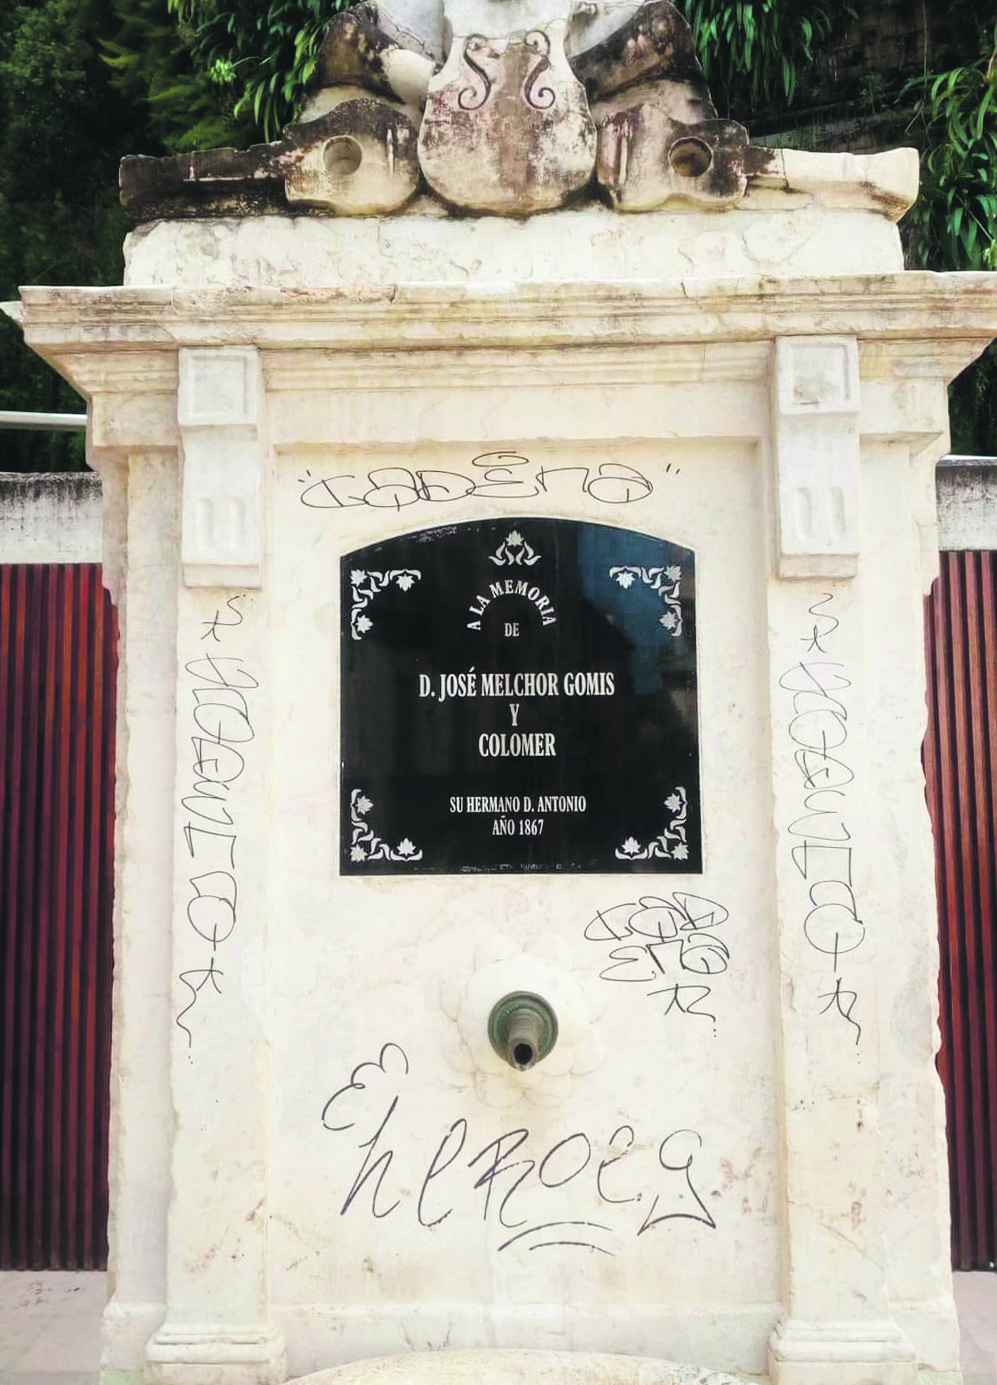 Pintades al patrimoni local signades pel vandalisme El Periòdic d'Ontinyent - Noticies a Ontinyent